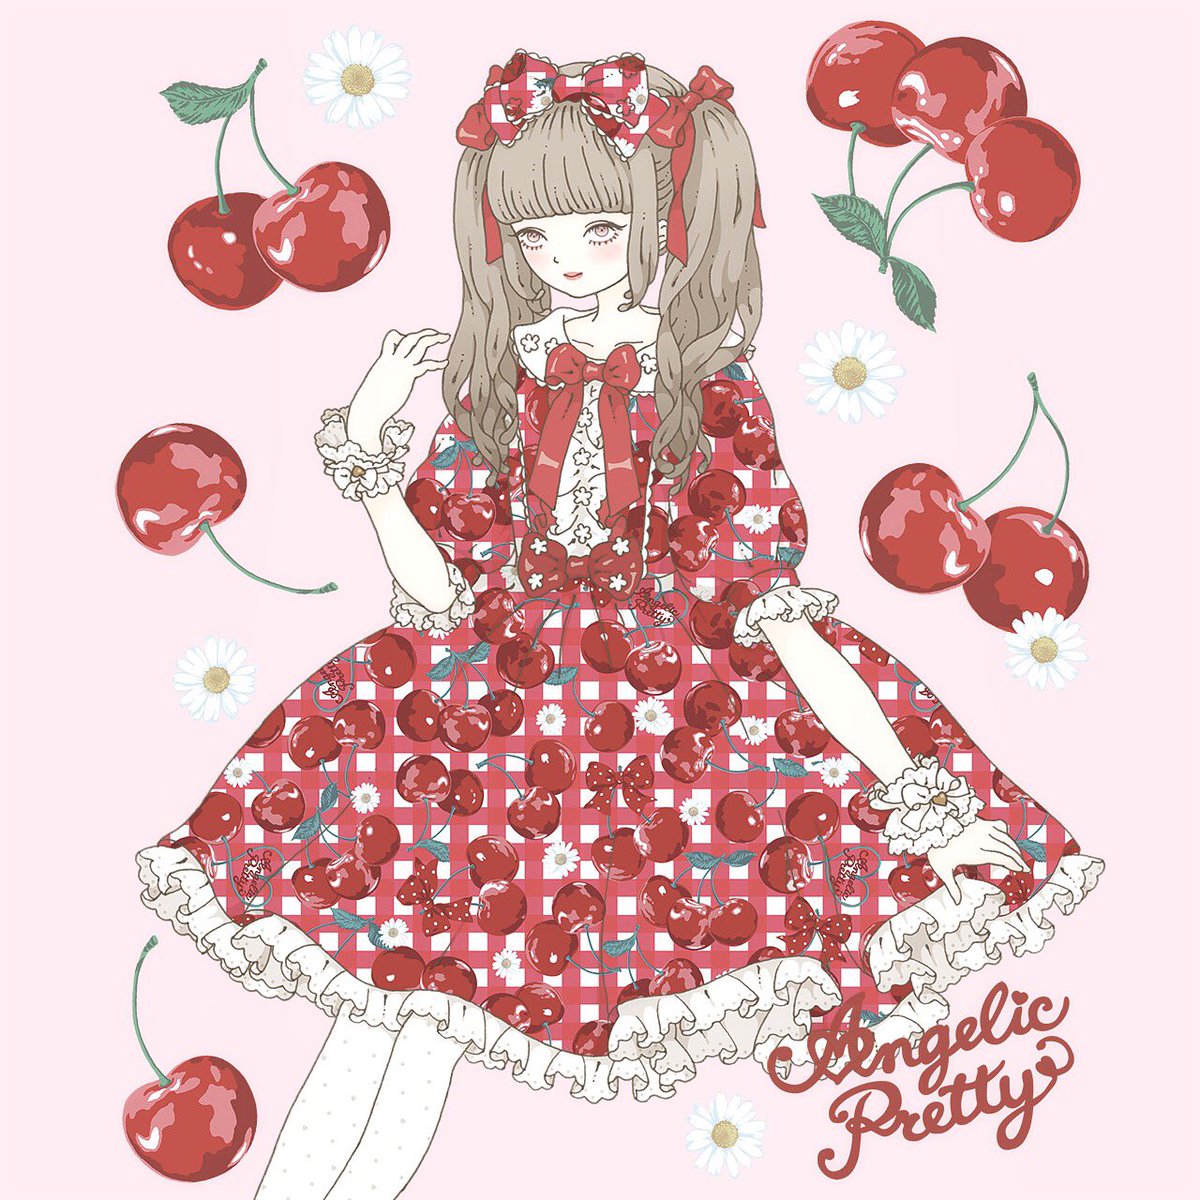 今井キラ Angelic Pretty Fresh Cherry ポストカードのイラストを担当させて頂きました T Co Qros8niujb Twitter